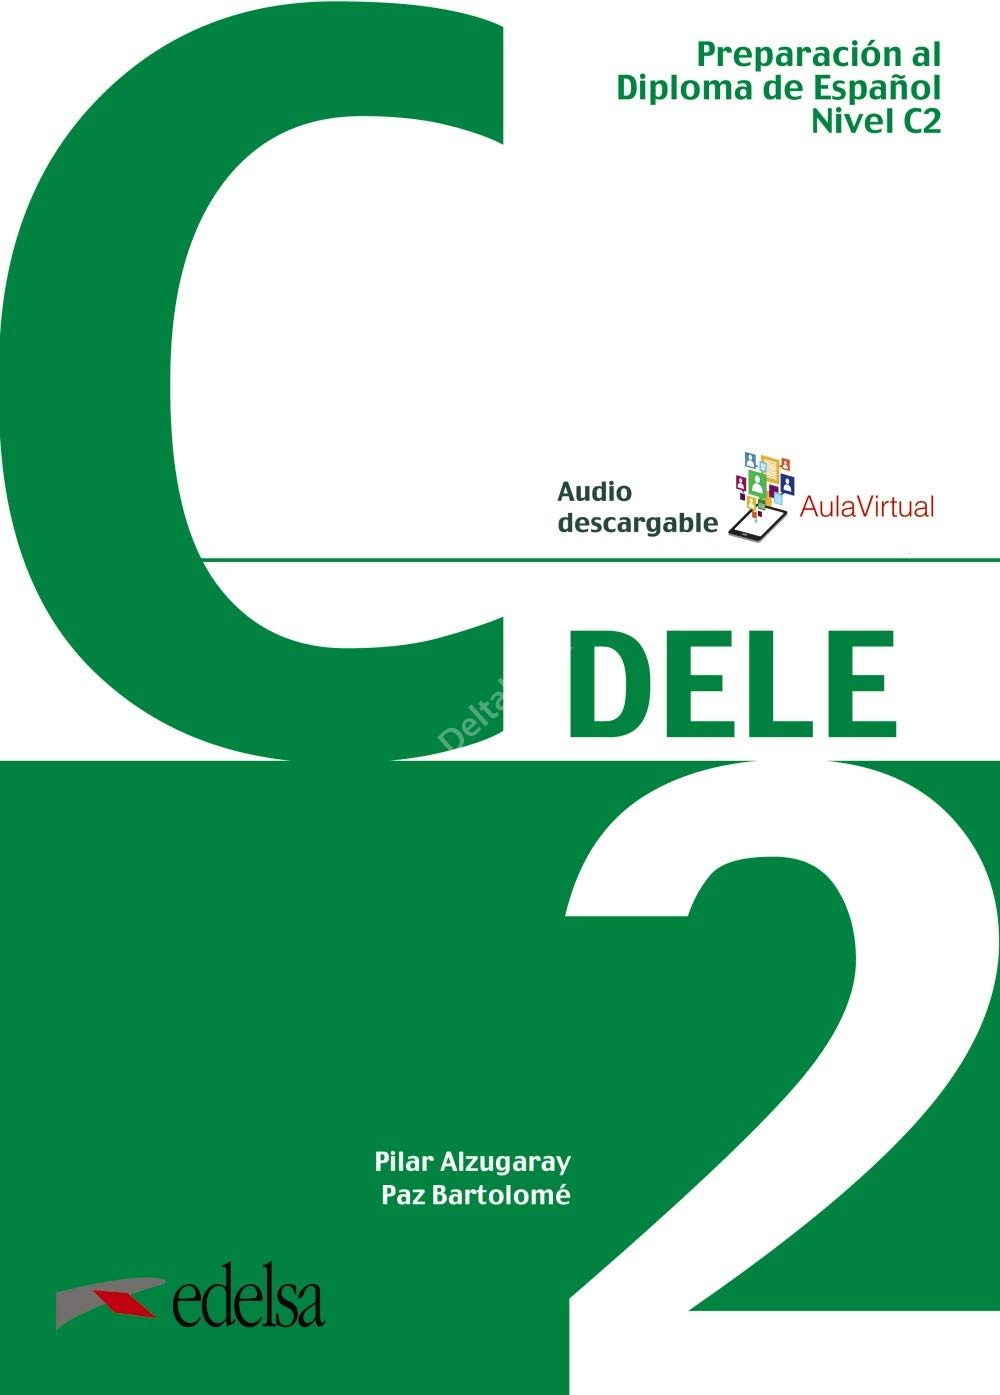 P., Alzugaray Preparacion DELE C2 - Libro + codigo Ed2019 